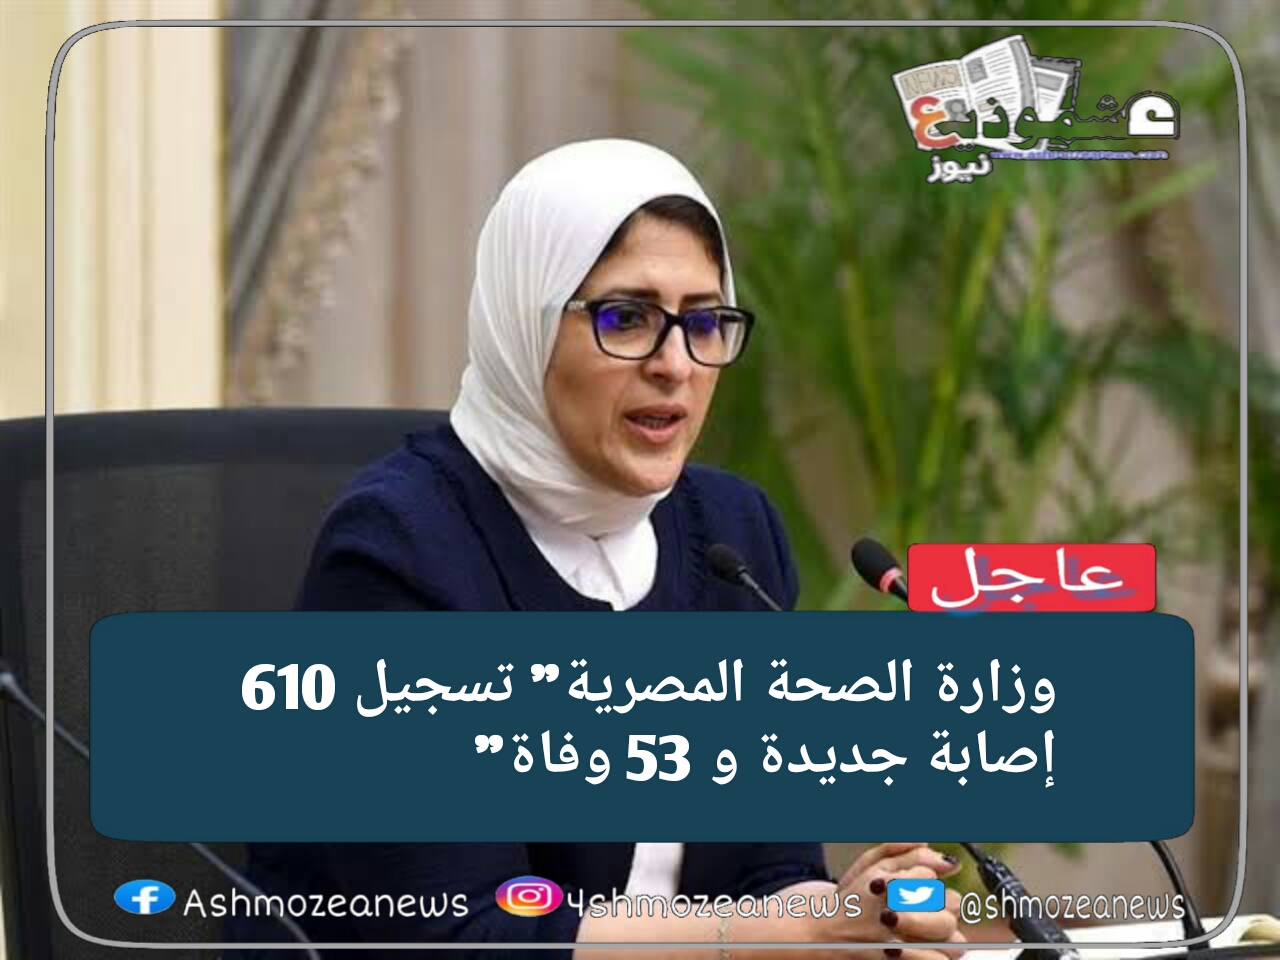 وزارة الصحة المصرية" تسجيل 610 إصابة جديدة و 53 وفاة" 